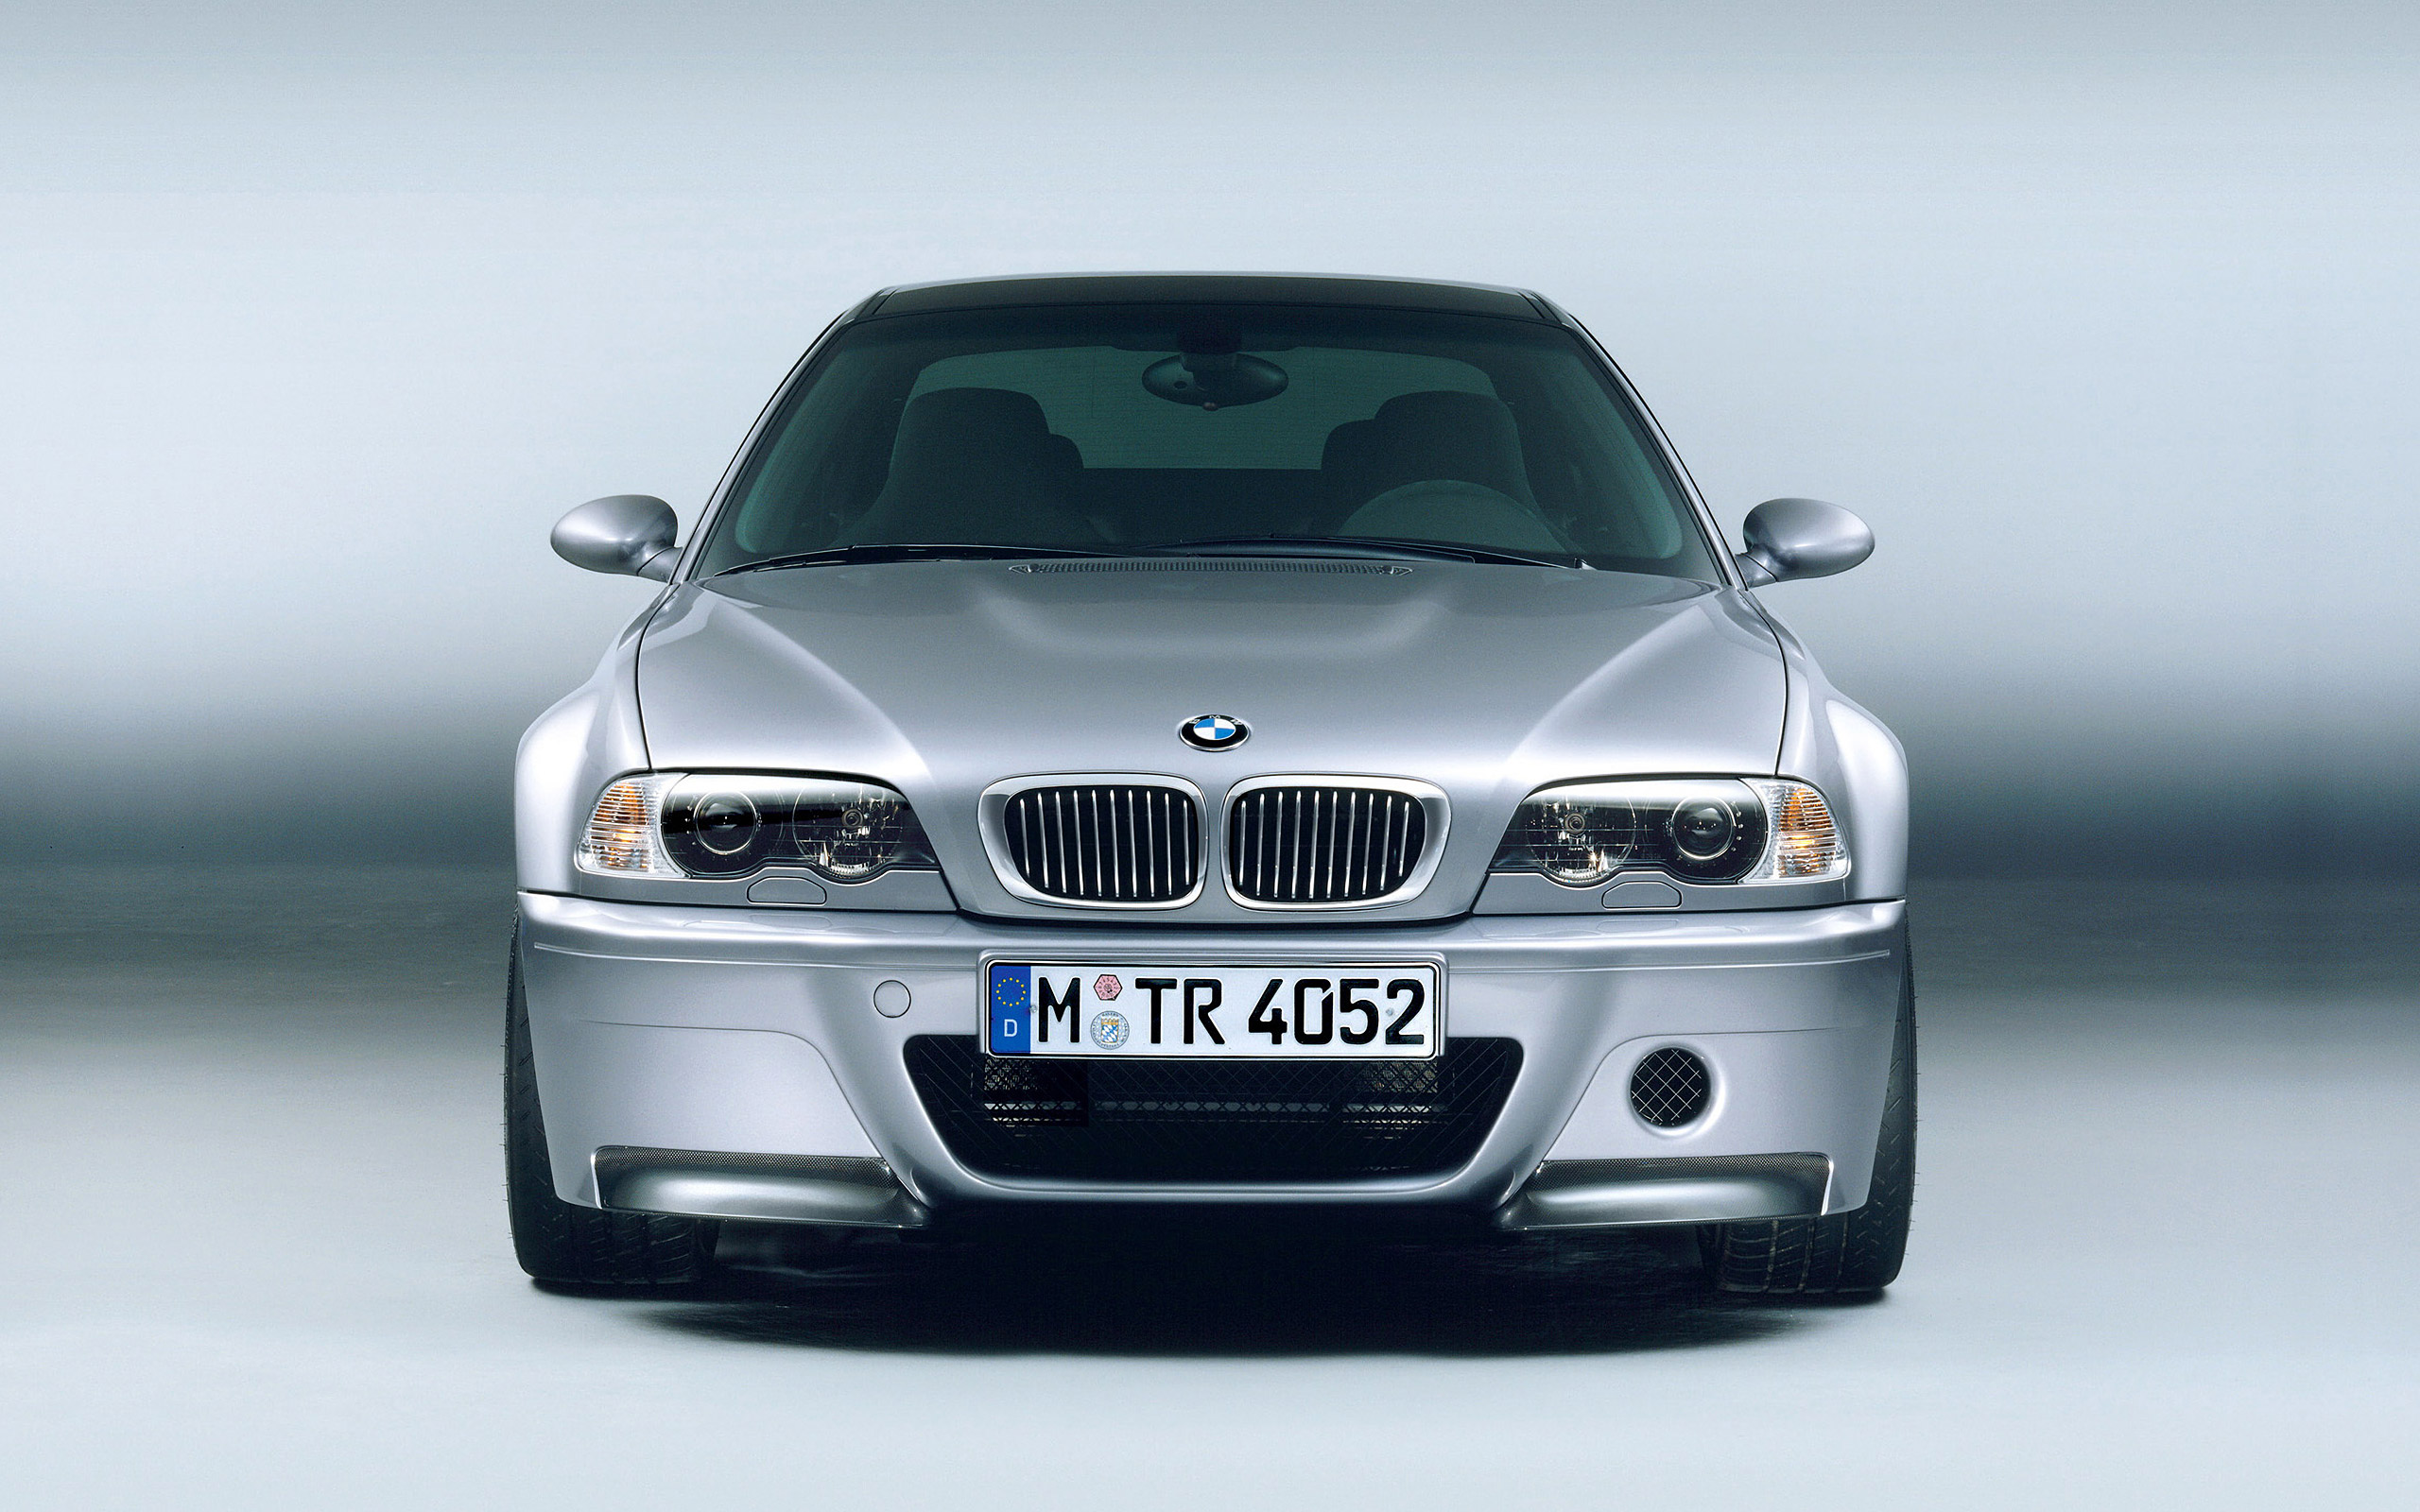  2003 BMW M3 CSL Wallpaper.